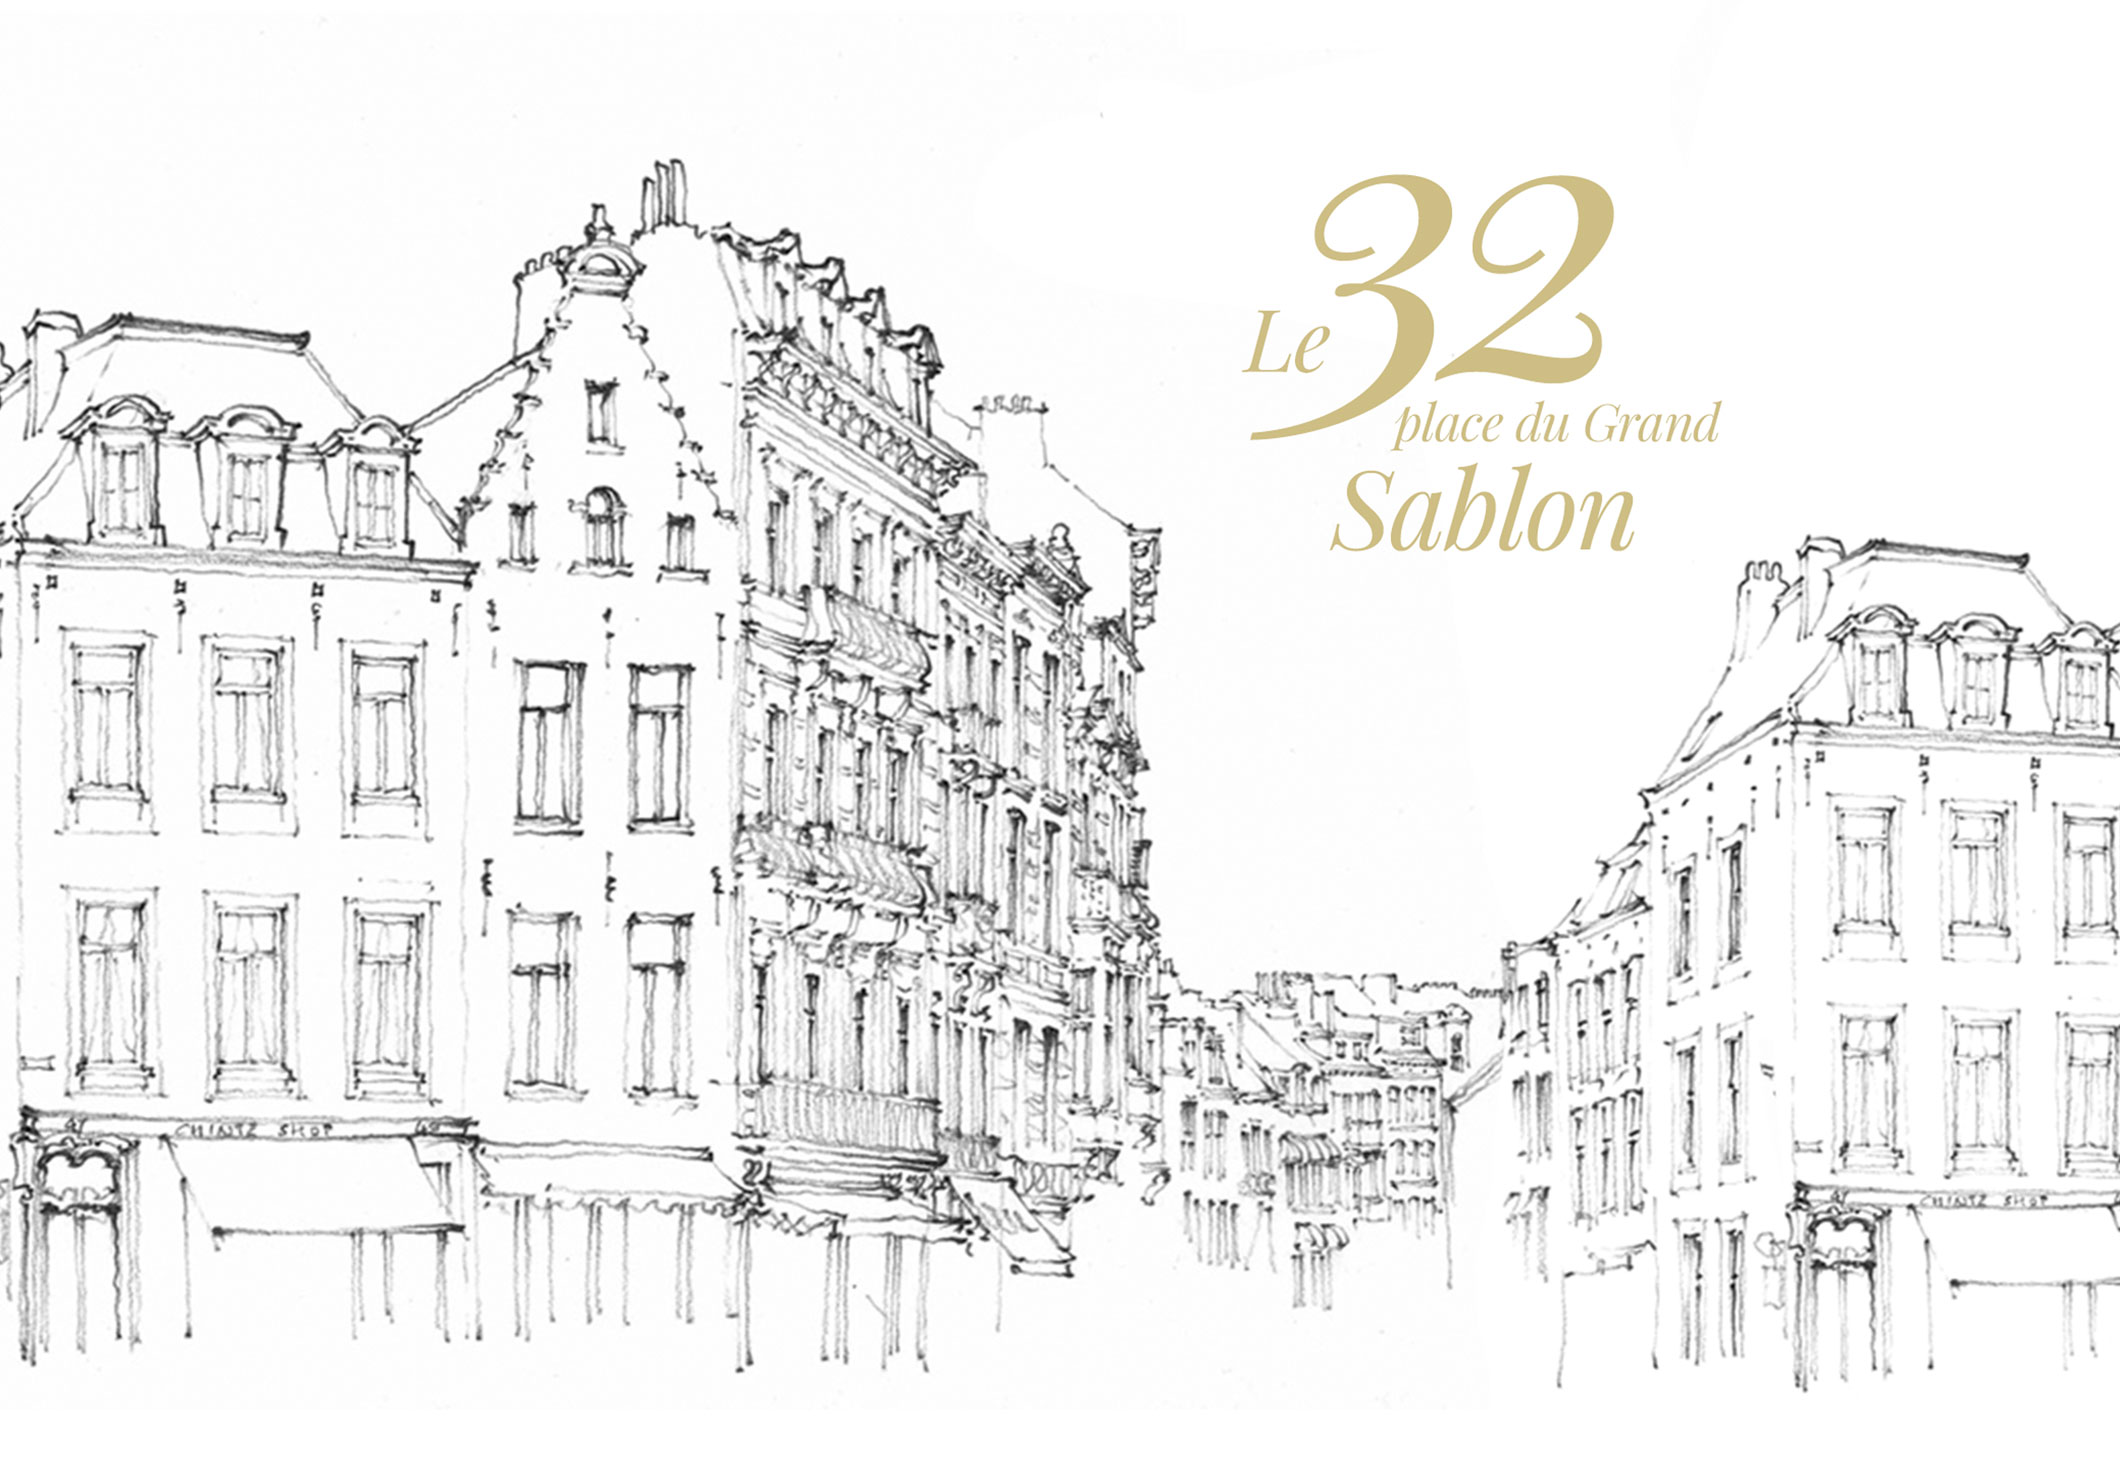 Le 32 place du Grand Sablon